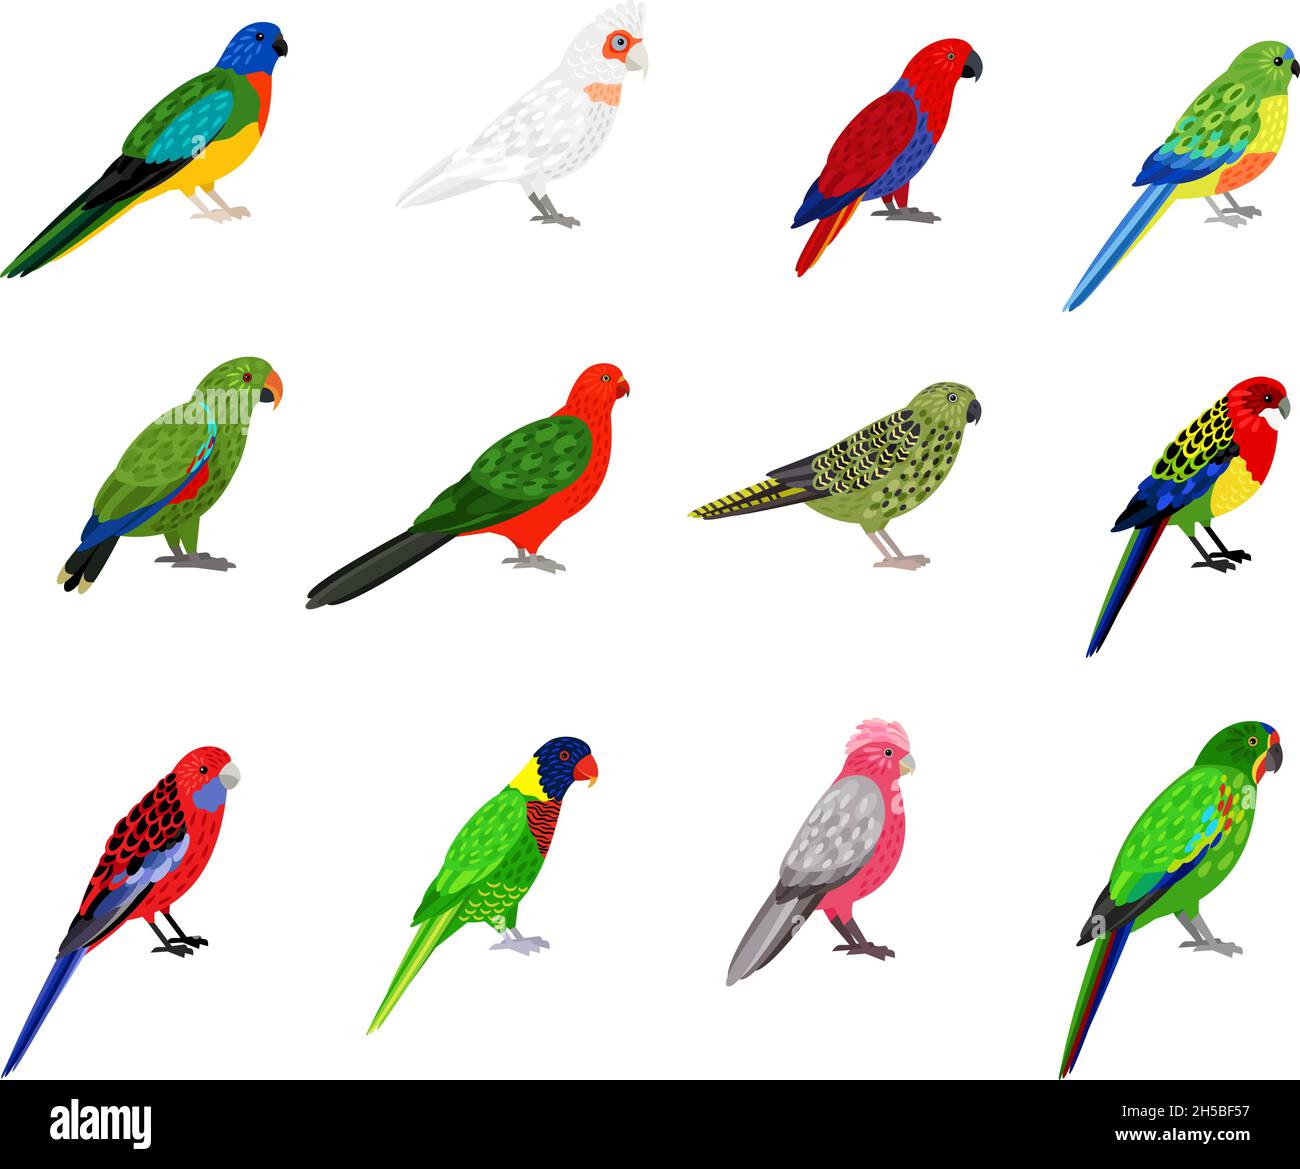 Papageienset. Cartoon-Vögel mit bunten Federn, tropische Figuren des Zoos mit Schnabel und Federn, Vektordarstellung von farbigen Sittichen isoliert auf weißem Hintergrund Stock Vektor